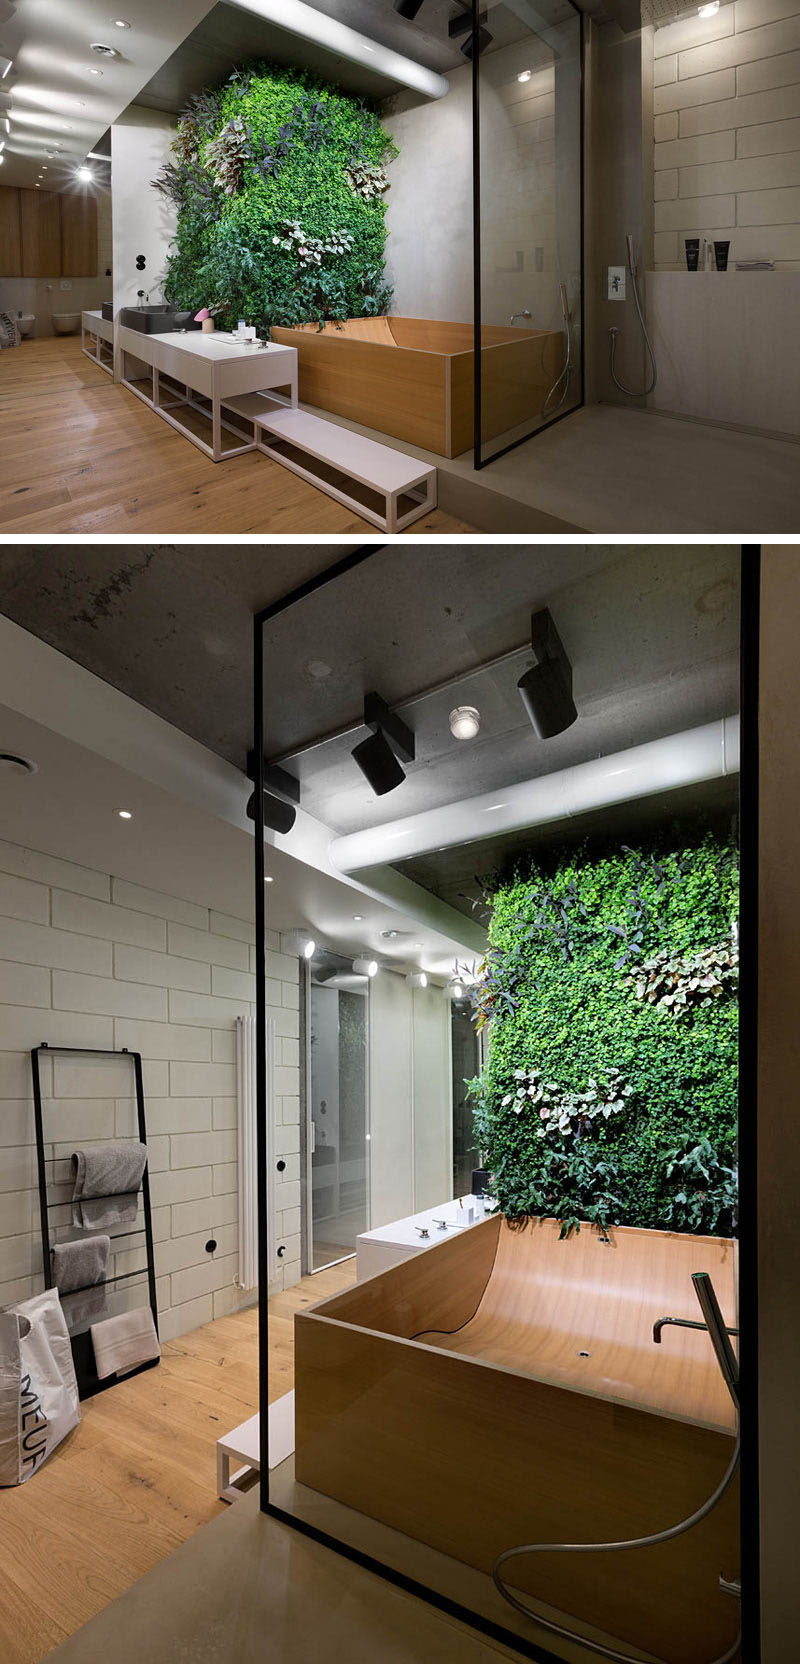 Bathroom Design Idea - Create a Spa-Like Bathroom At Home // Include touches of nature.